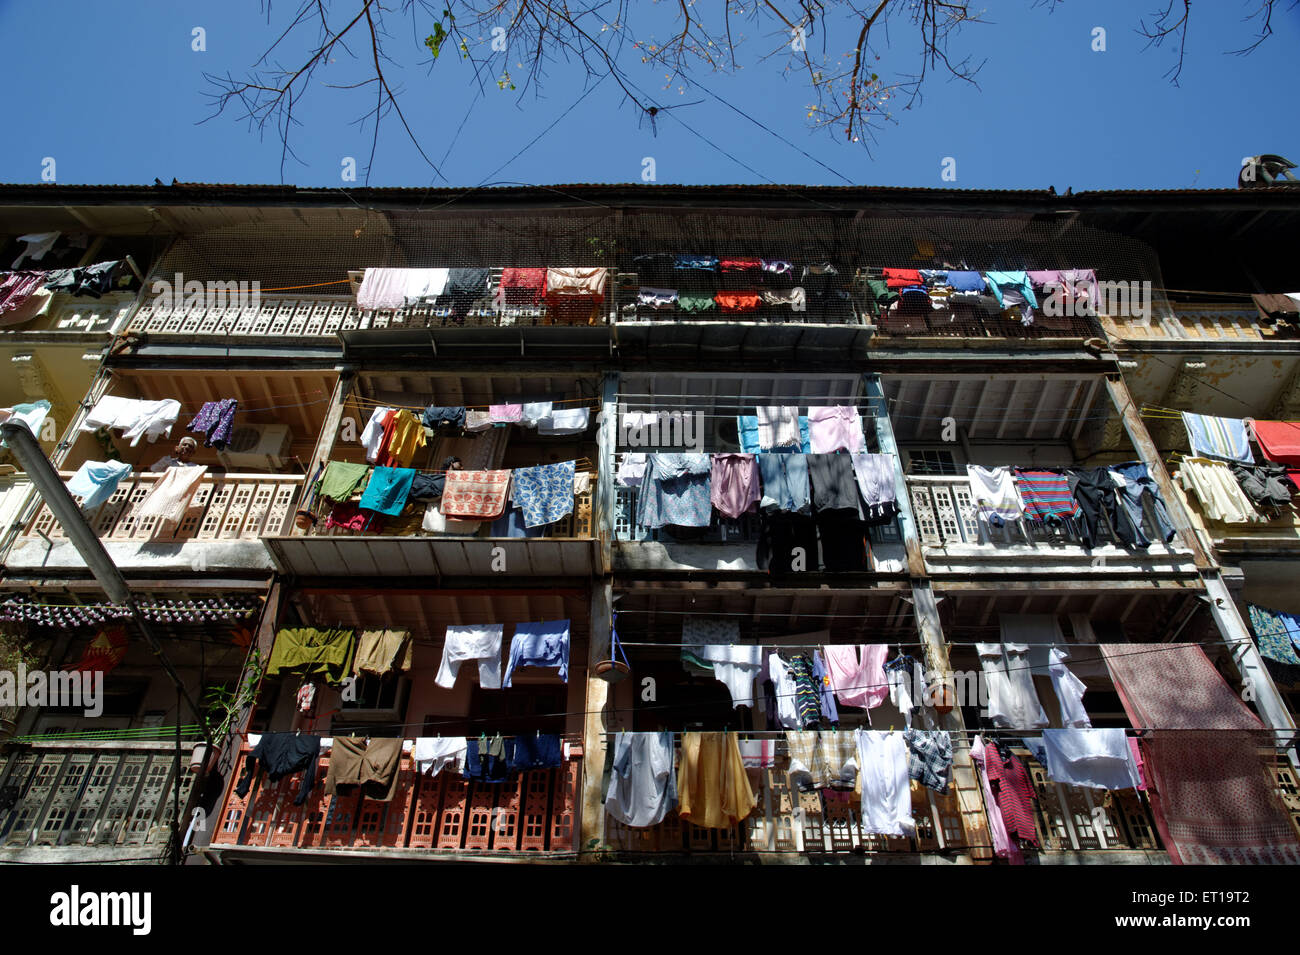 Tücher zum Trocknen Chawl Anlagenbau Mumbai Maharashtra Asien Indien gehalten Stockfoto